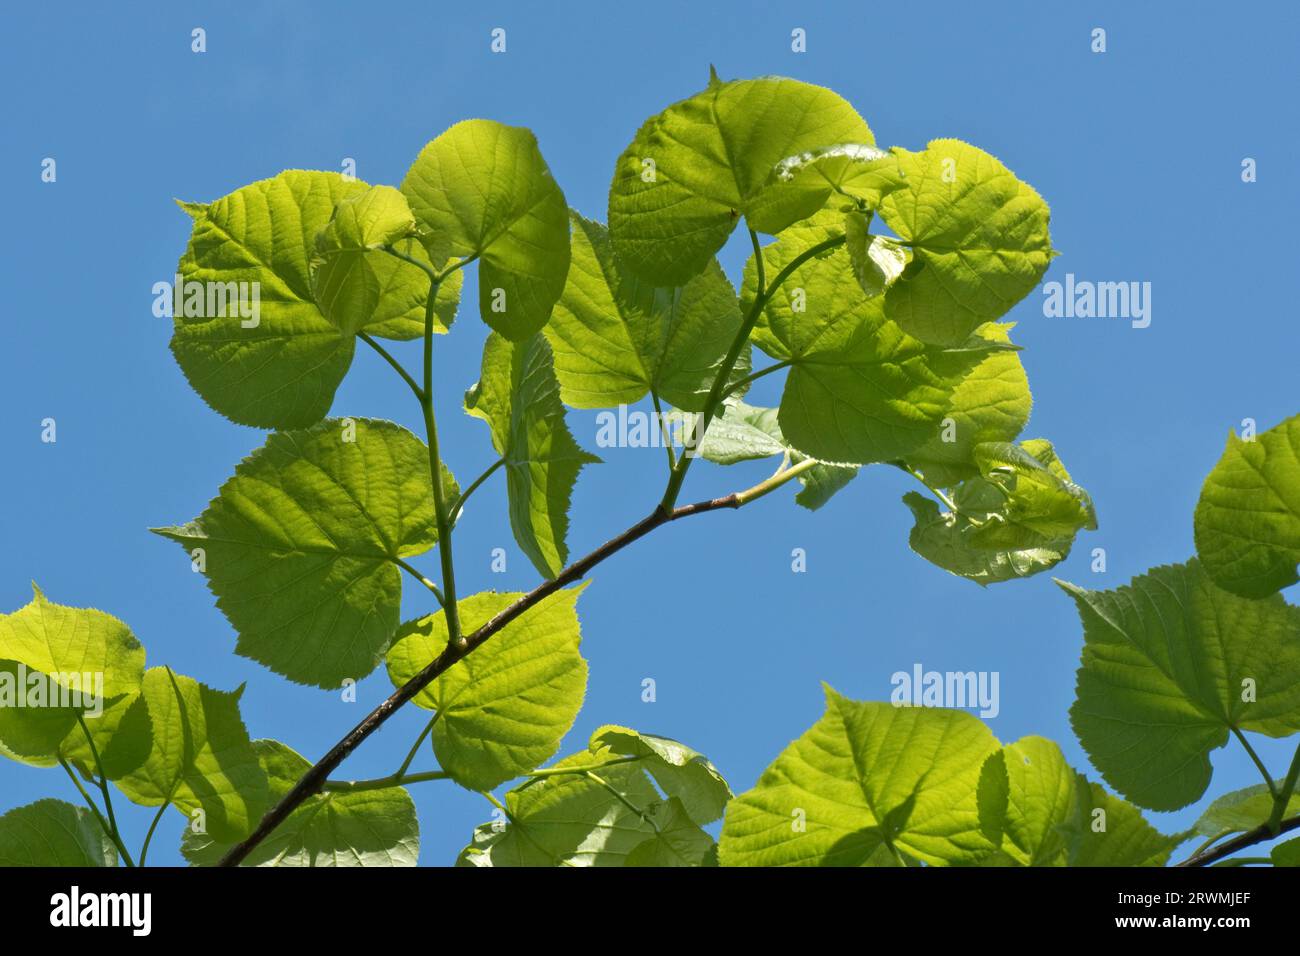 Tilleul ou tilleul à petites feuilles (Tilia cordata) feuilles d'arbre vert frais contre un ciel bleu et rétroéclairées par la lumière du soleil par une belle journée de printemps, Berkshire, mai Banque D'Images